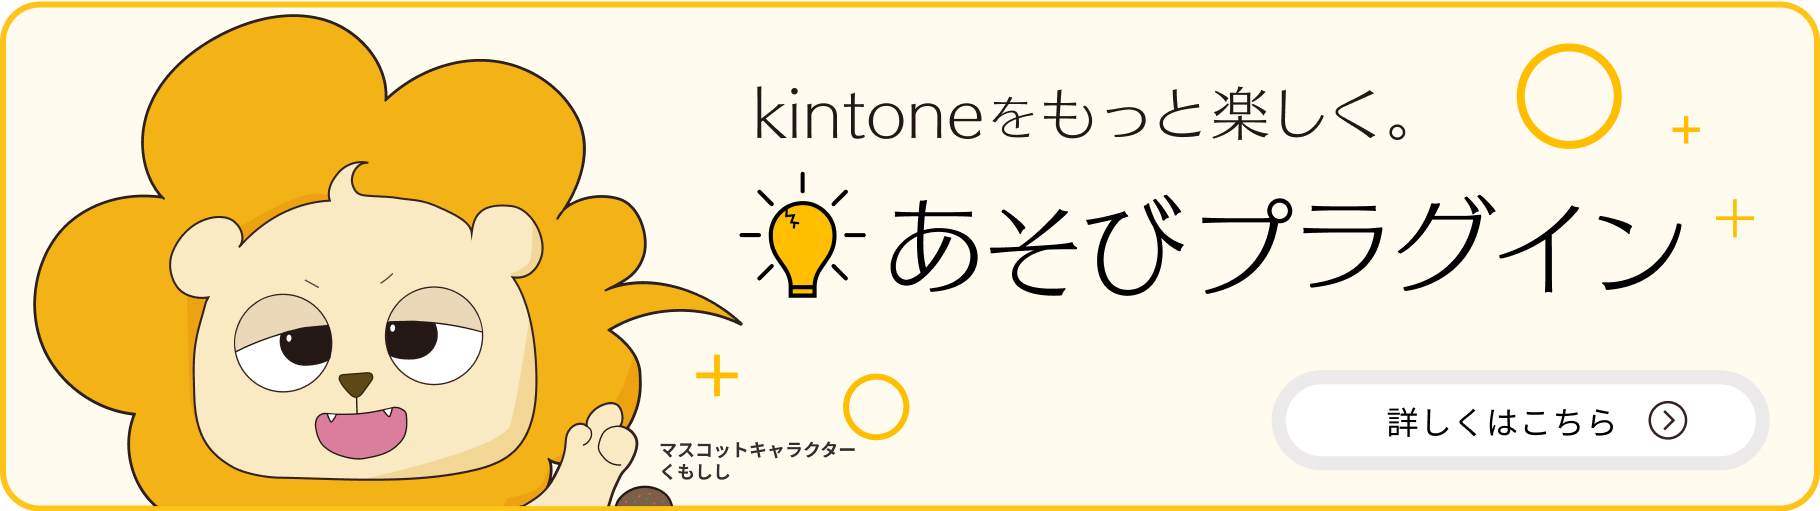 kinetoneをもっと楽しく！あそびプラグイン。詳しくはこちら